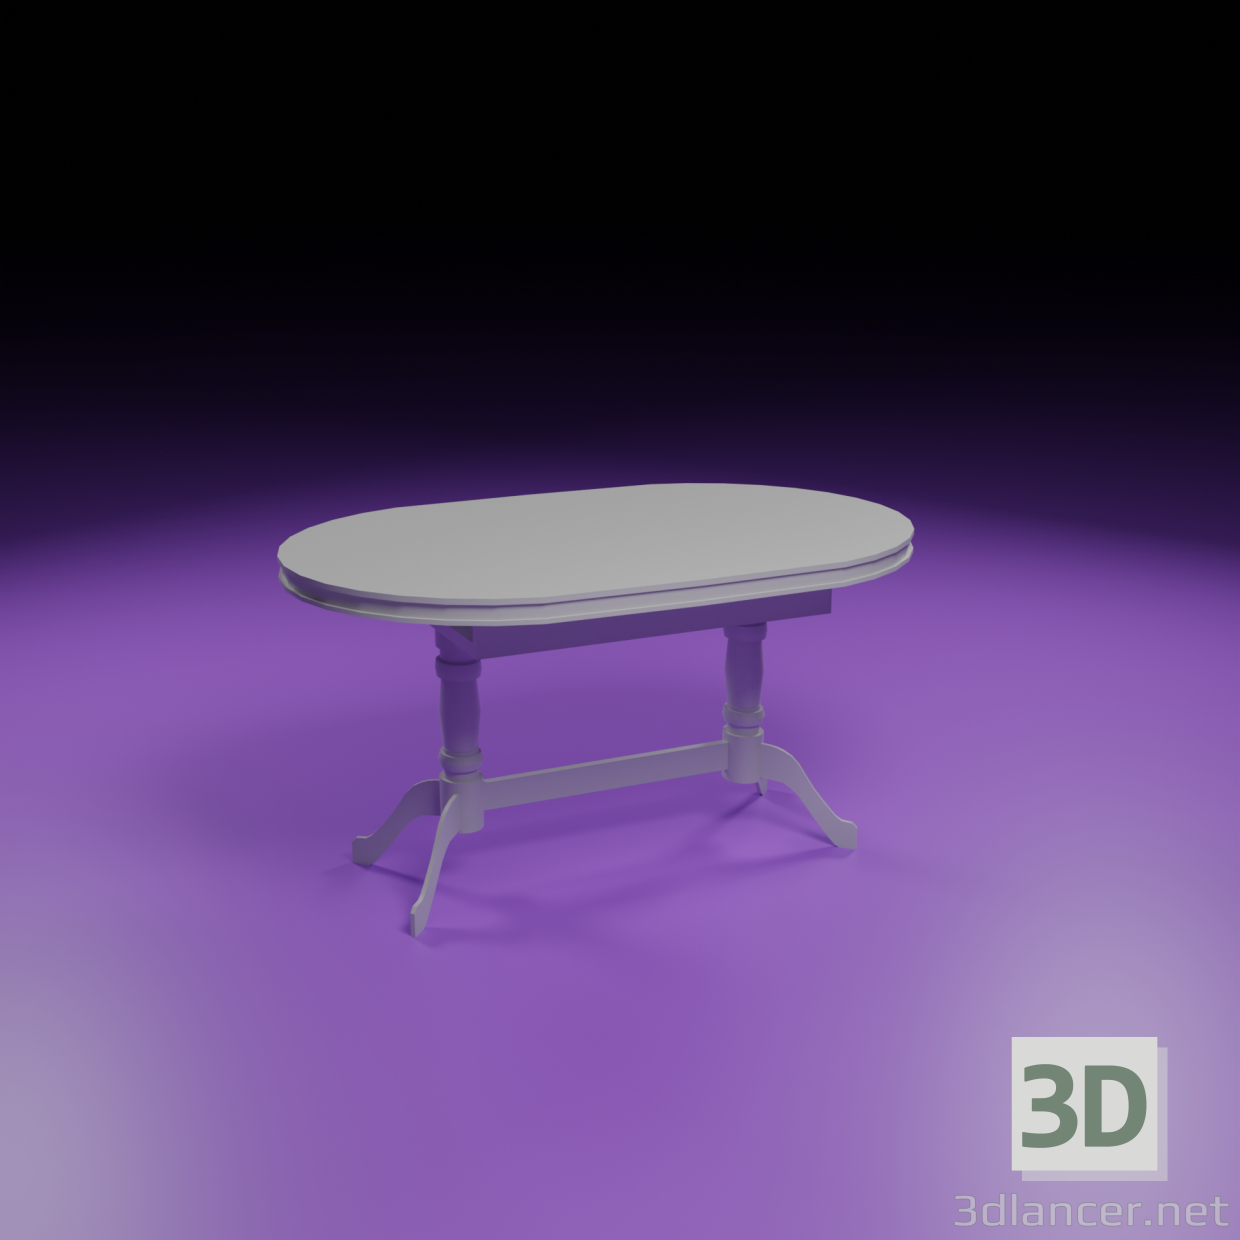 Divio-Tabelle 3D-Modell kaufen - Rendern